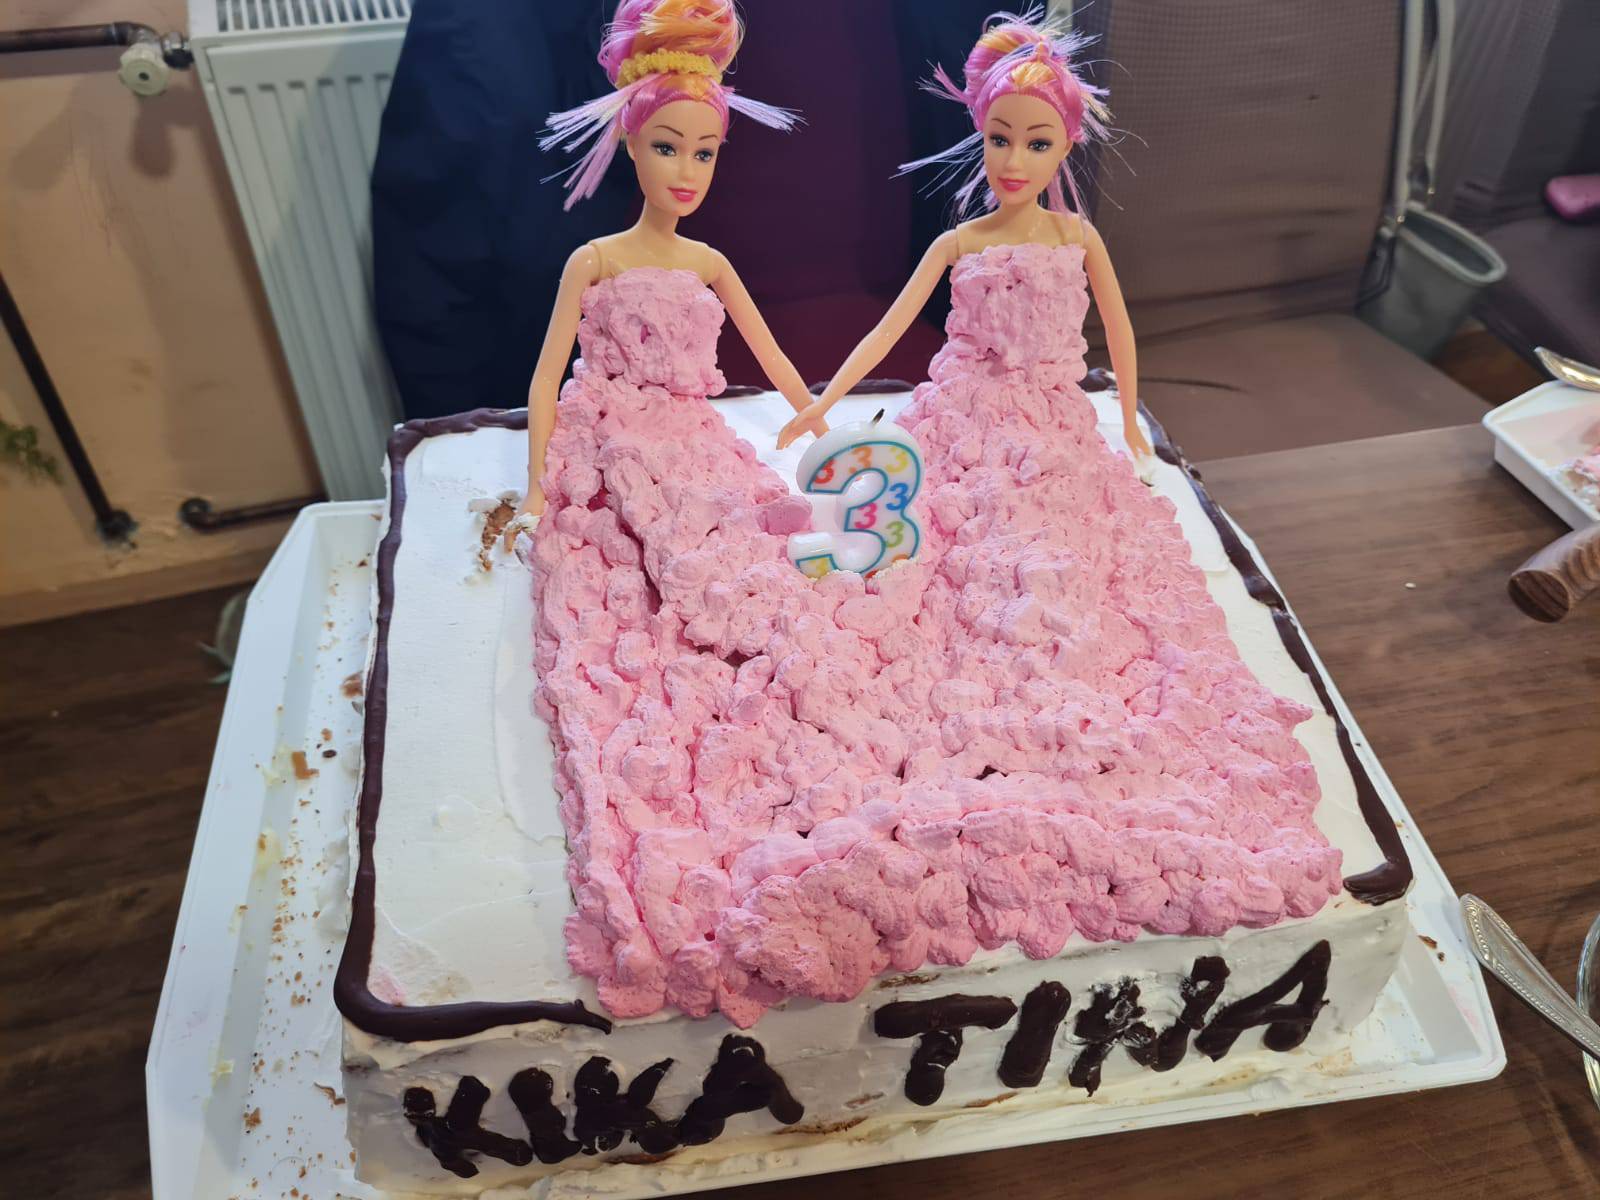 Prve hrvatske sijamske blizanke slave treći rođendan: 'Ispunjeni smo srećom kad ih gledamo'